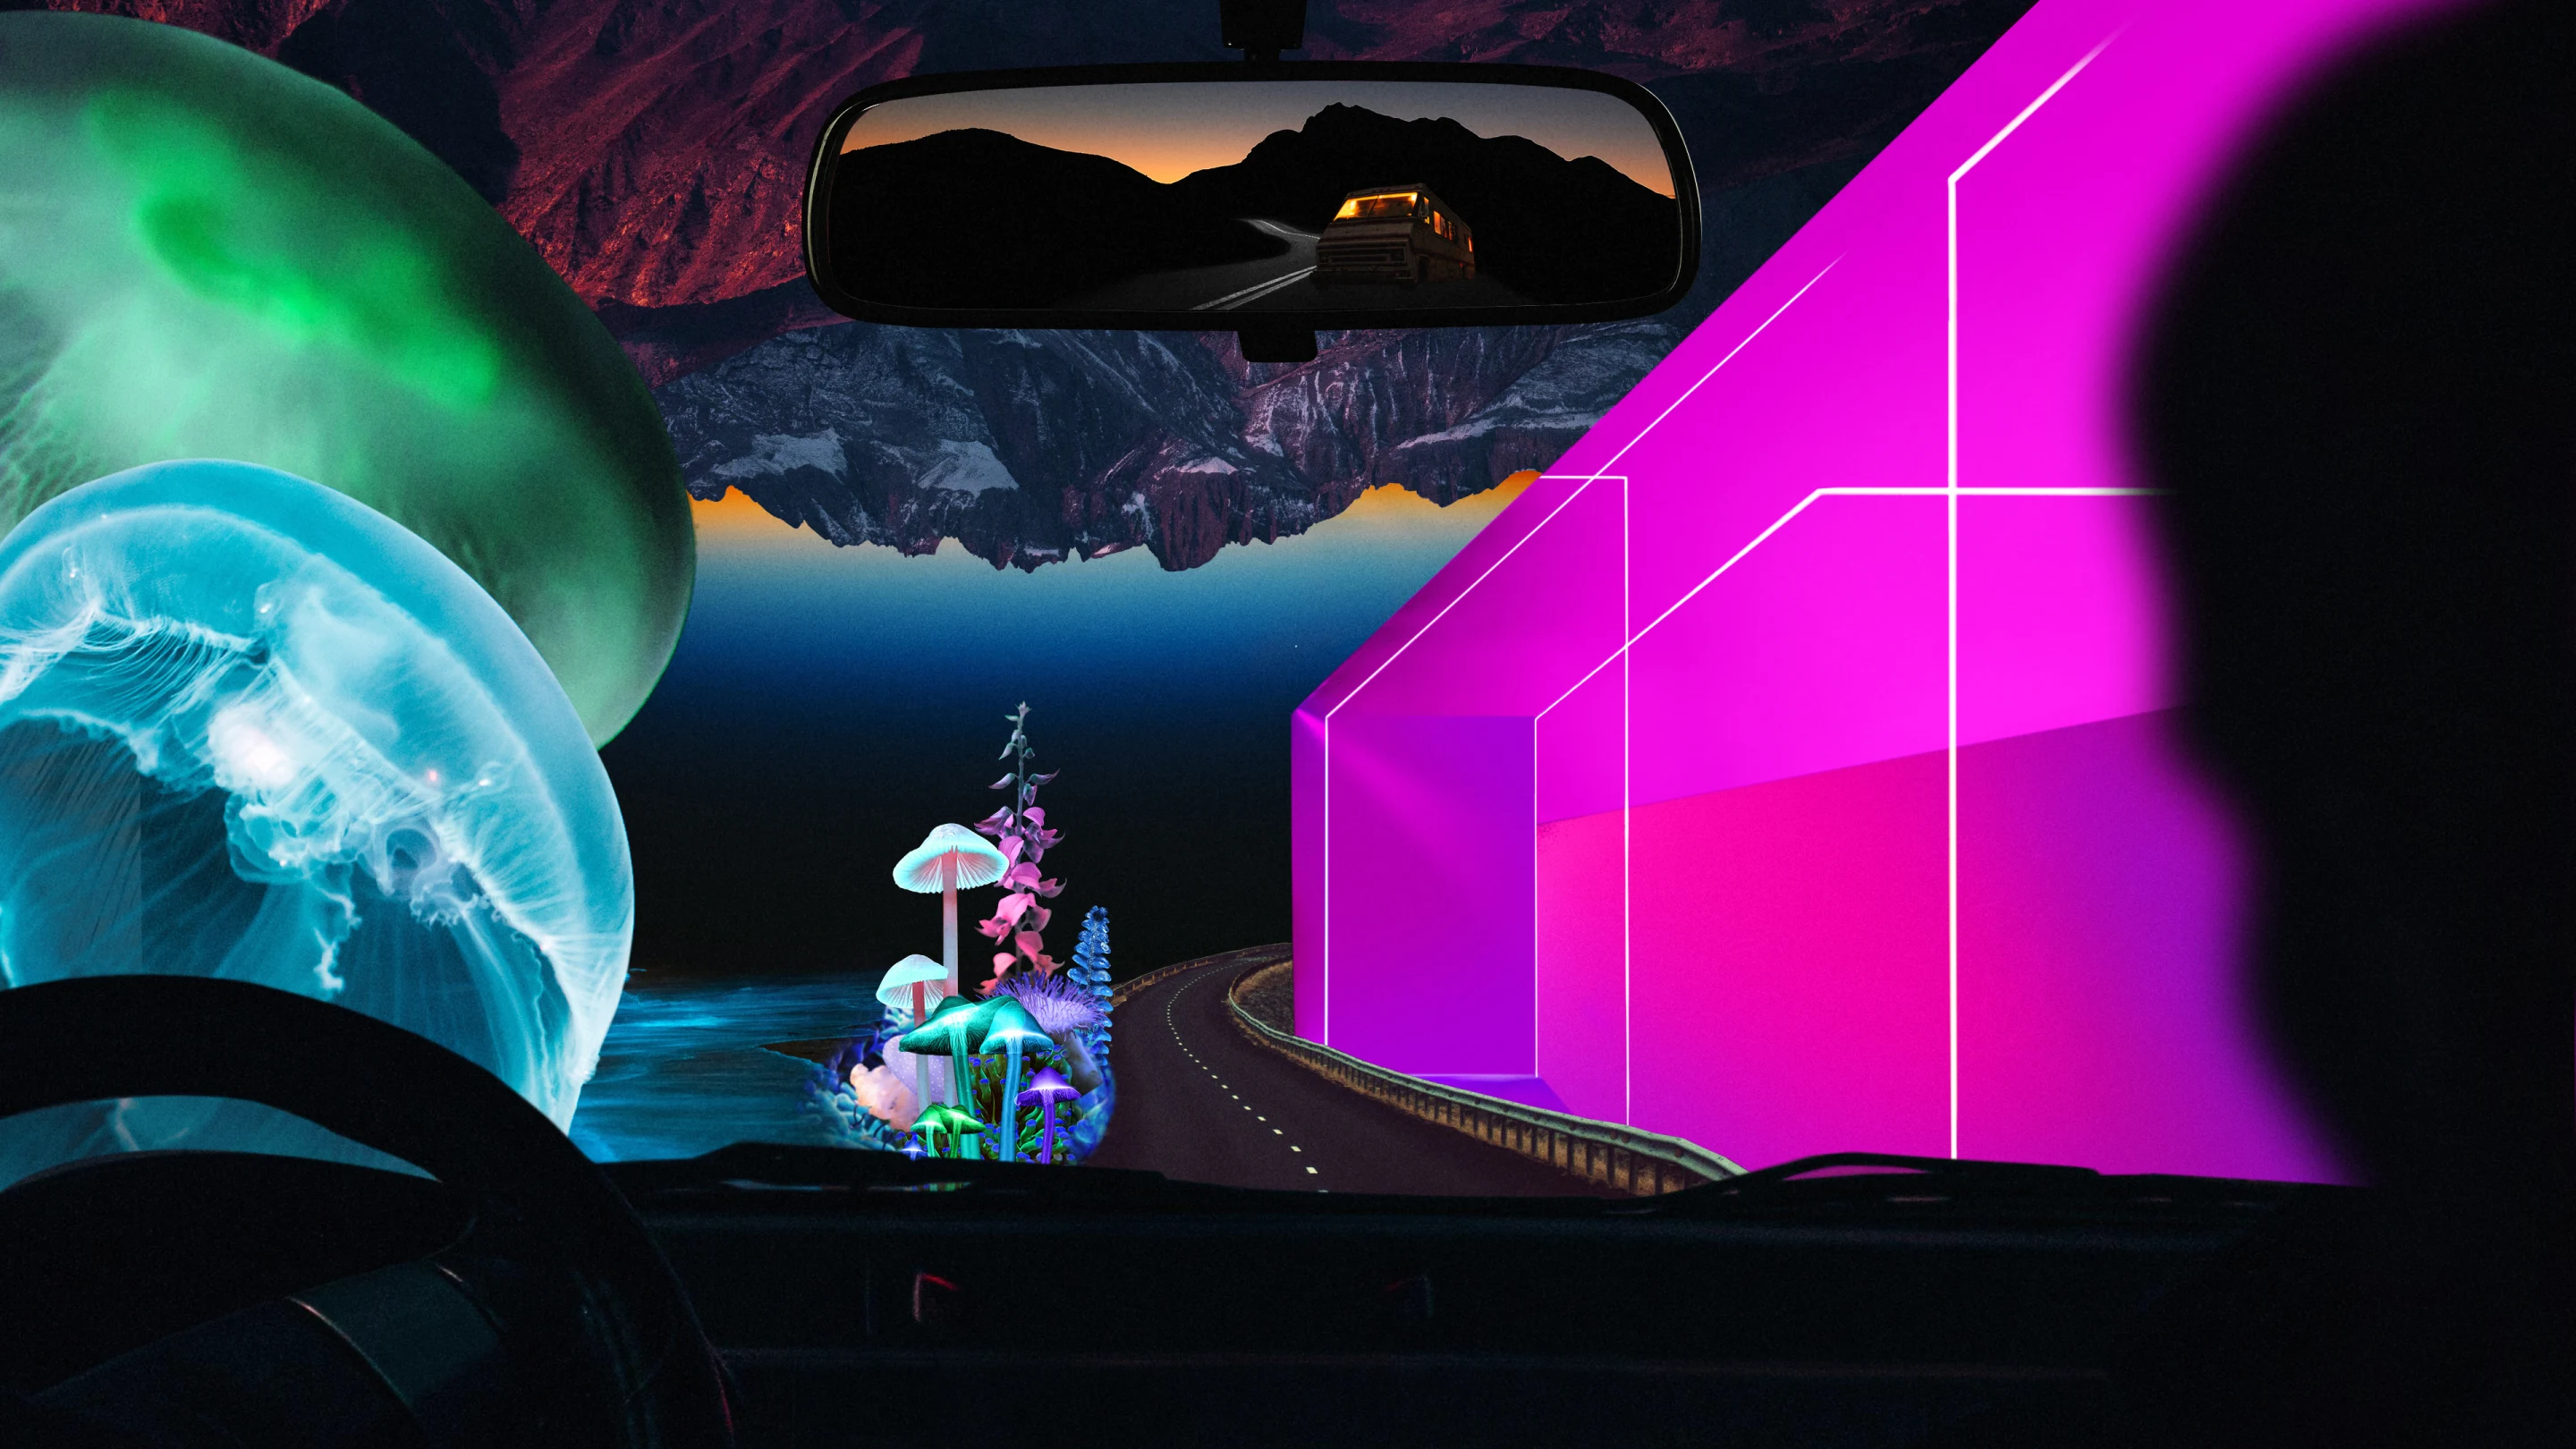 Collage aux couleurs vives vu à travers le pare-brise d'une voiture. À gauche, grande méduse. À droite, formes géométriques rose fluo. Au fond, montagnes sombres et grands champignons façon dessin animé.